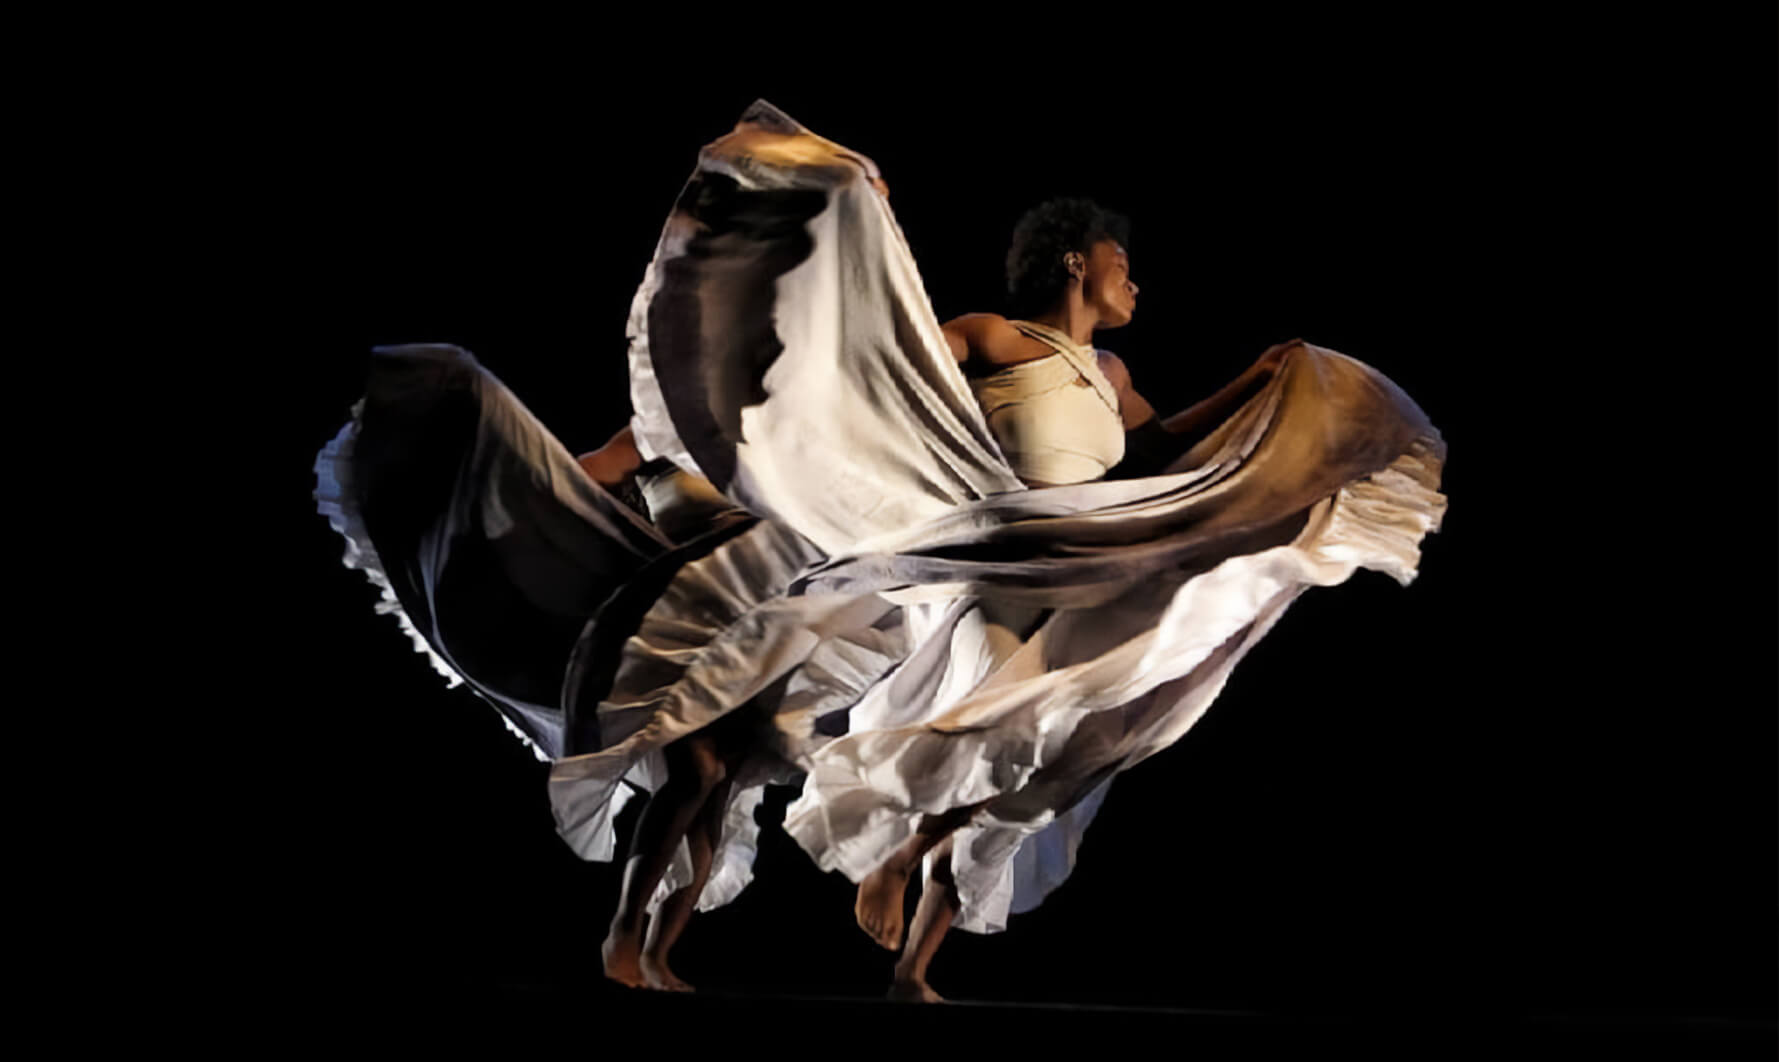 Bienal Internacional de Danza de Cali. Wangari Danza Afrocontemporánea - 'La Verdad Negada' Directora: Yndira Pera Cuesta. Producción del Teatro Mayor Julio Mario Santo Domingo.